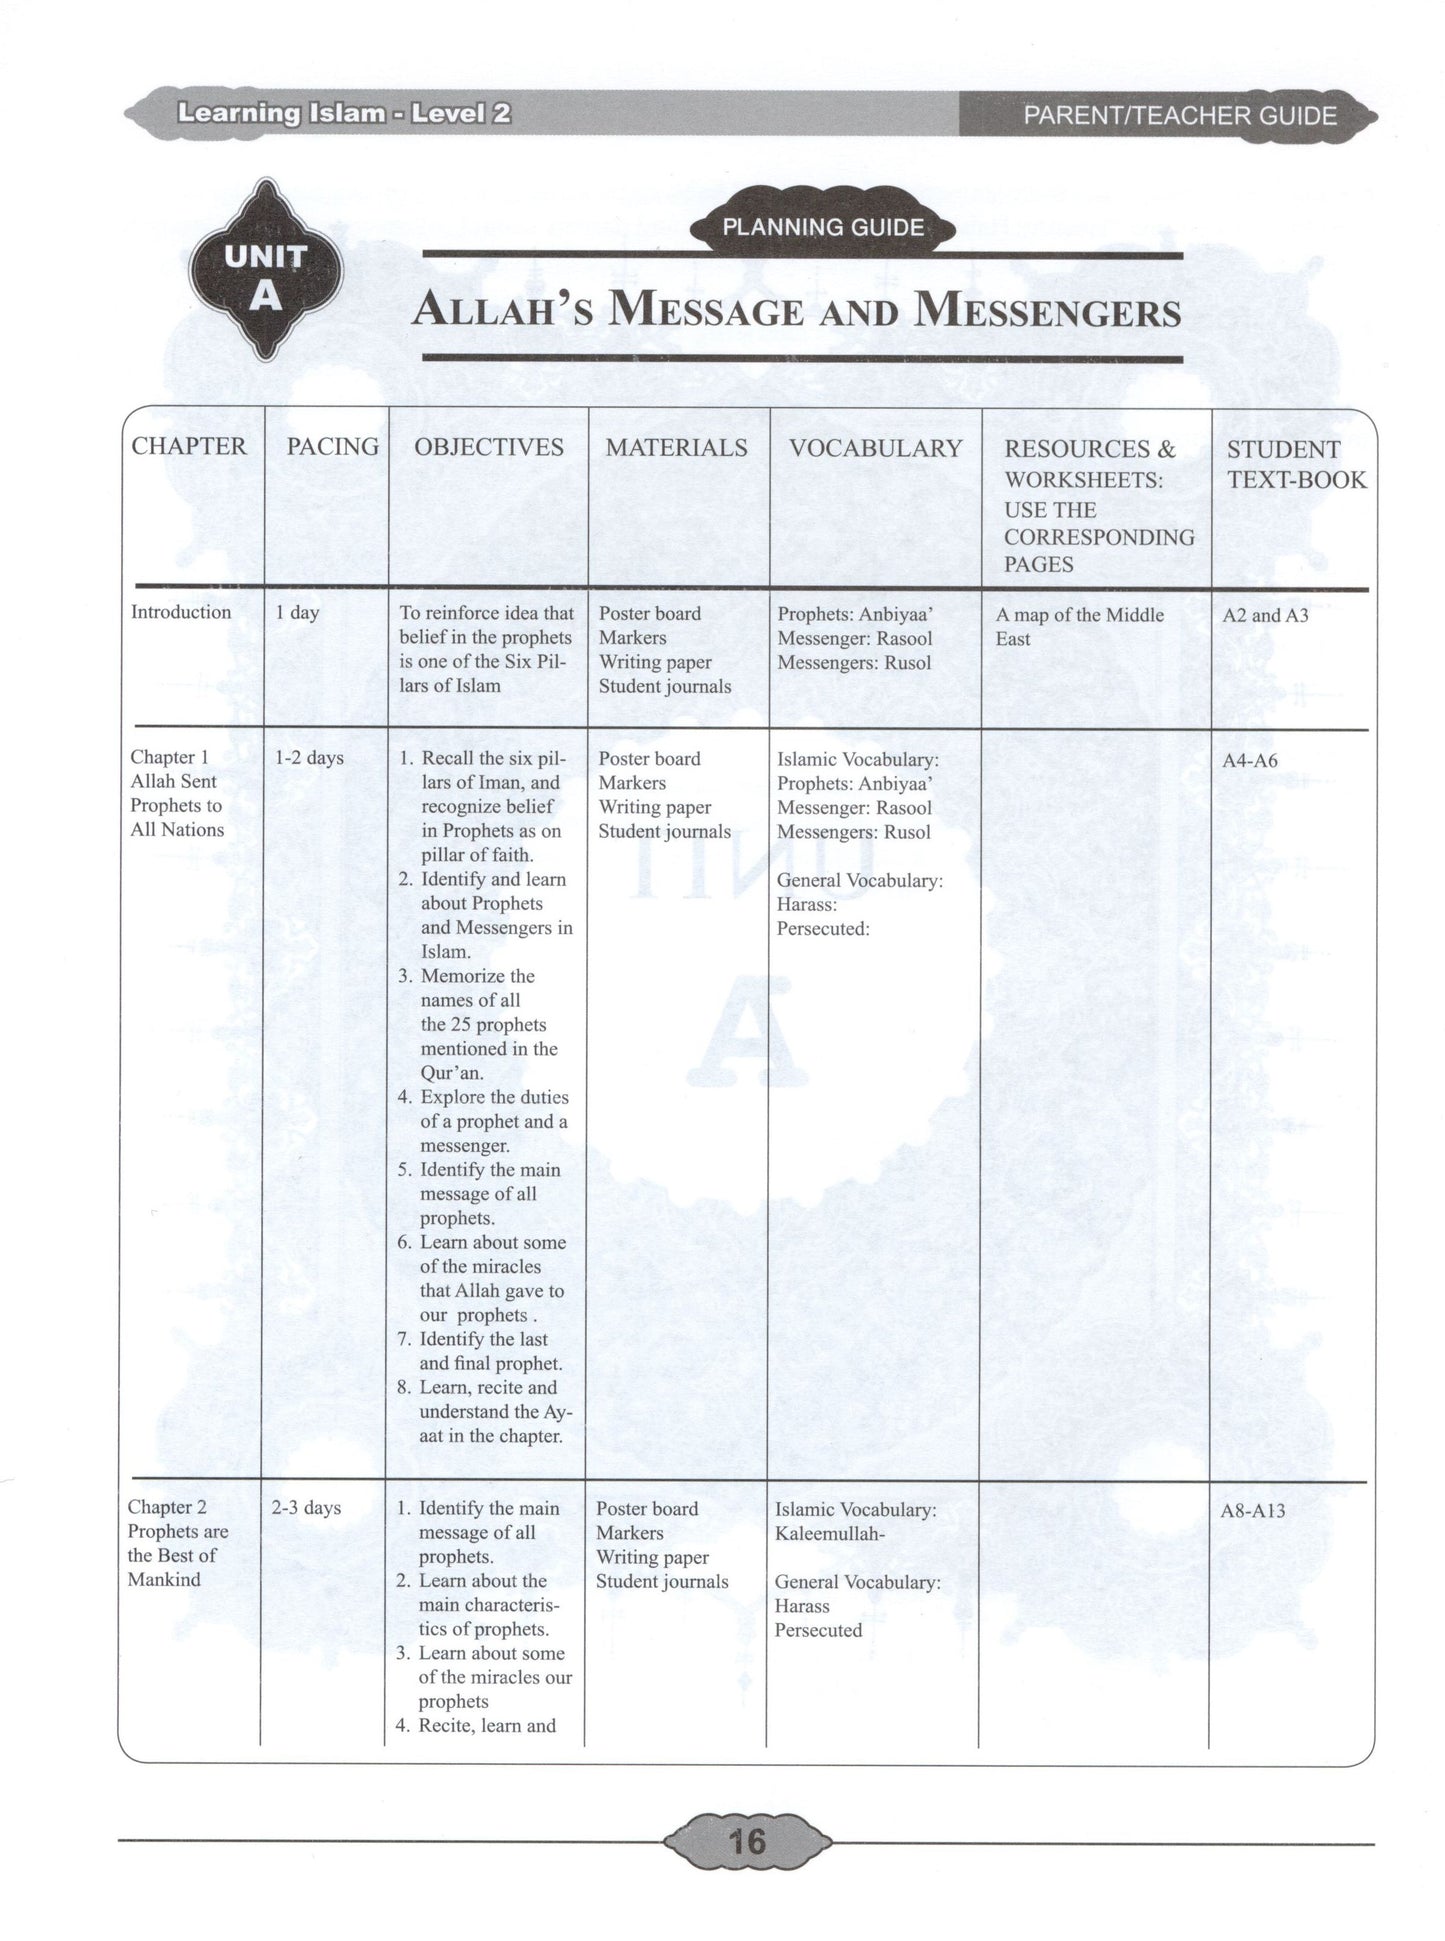 Learning Islam Parent/Teacher Guide Level 2 (Grade 7)